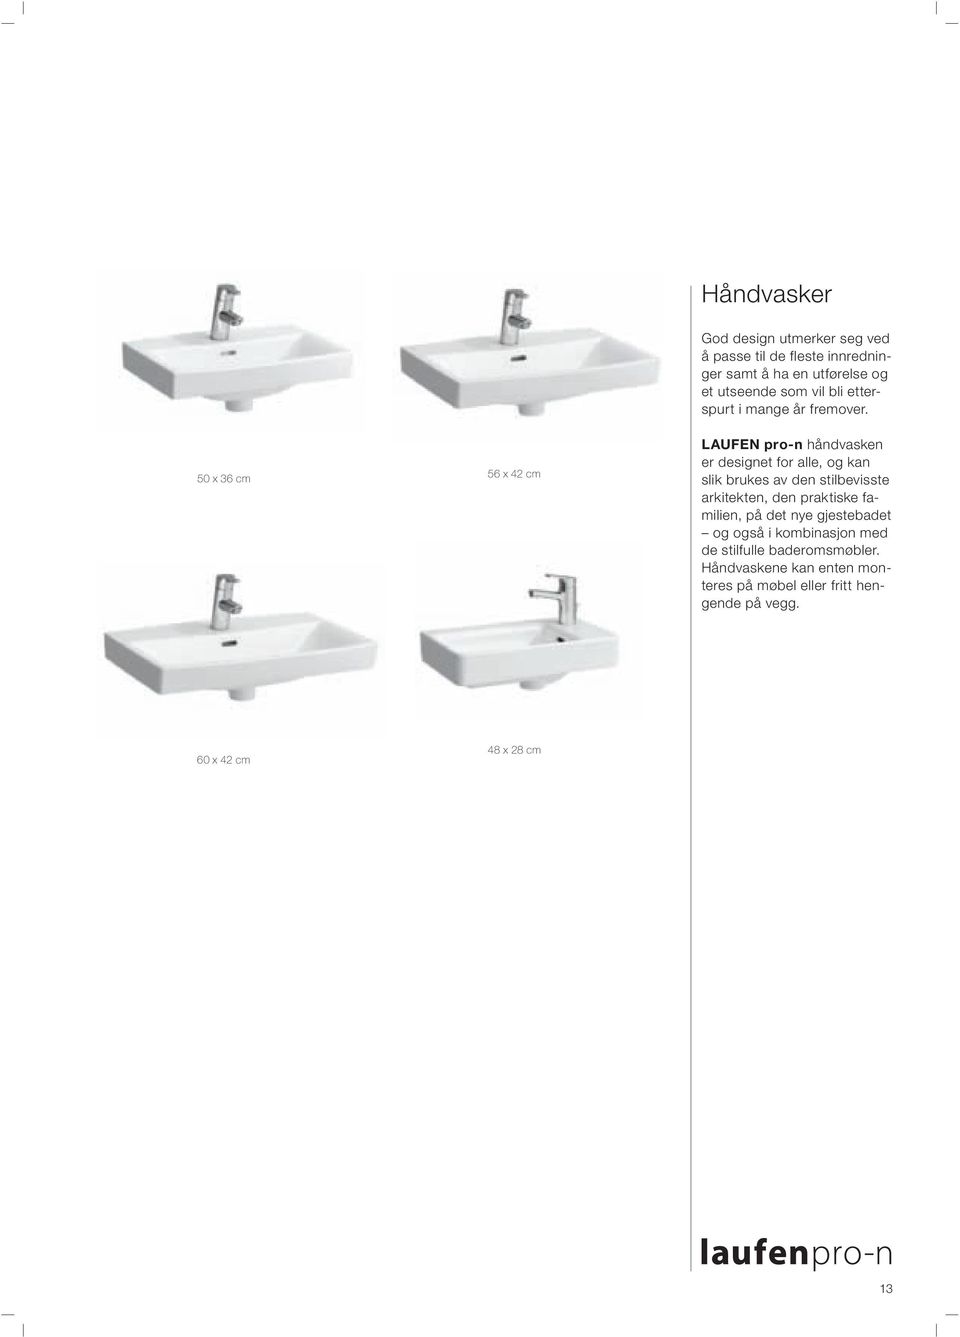 LAUFEN pro-n håndvasken er designet for alle, og kan slik brukes av den stilbevisste arkitekten, den praktiske